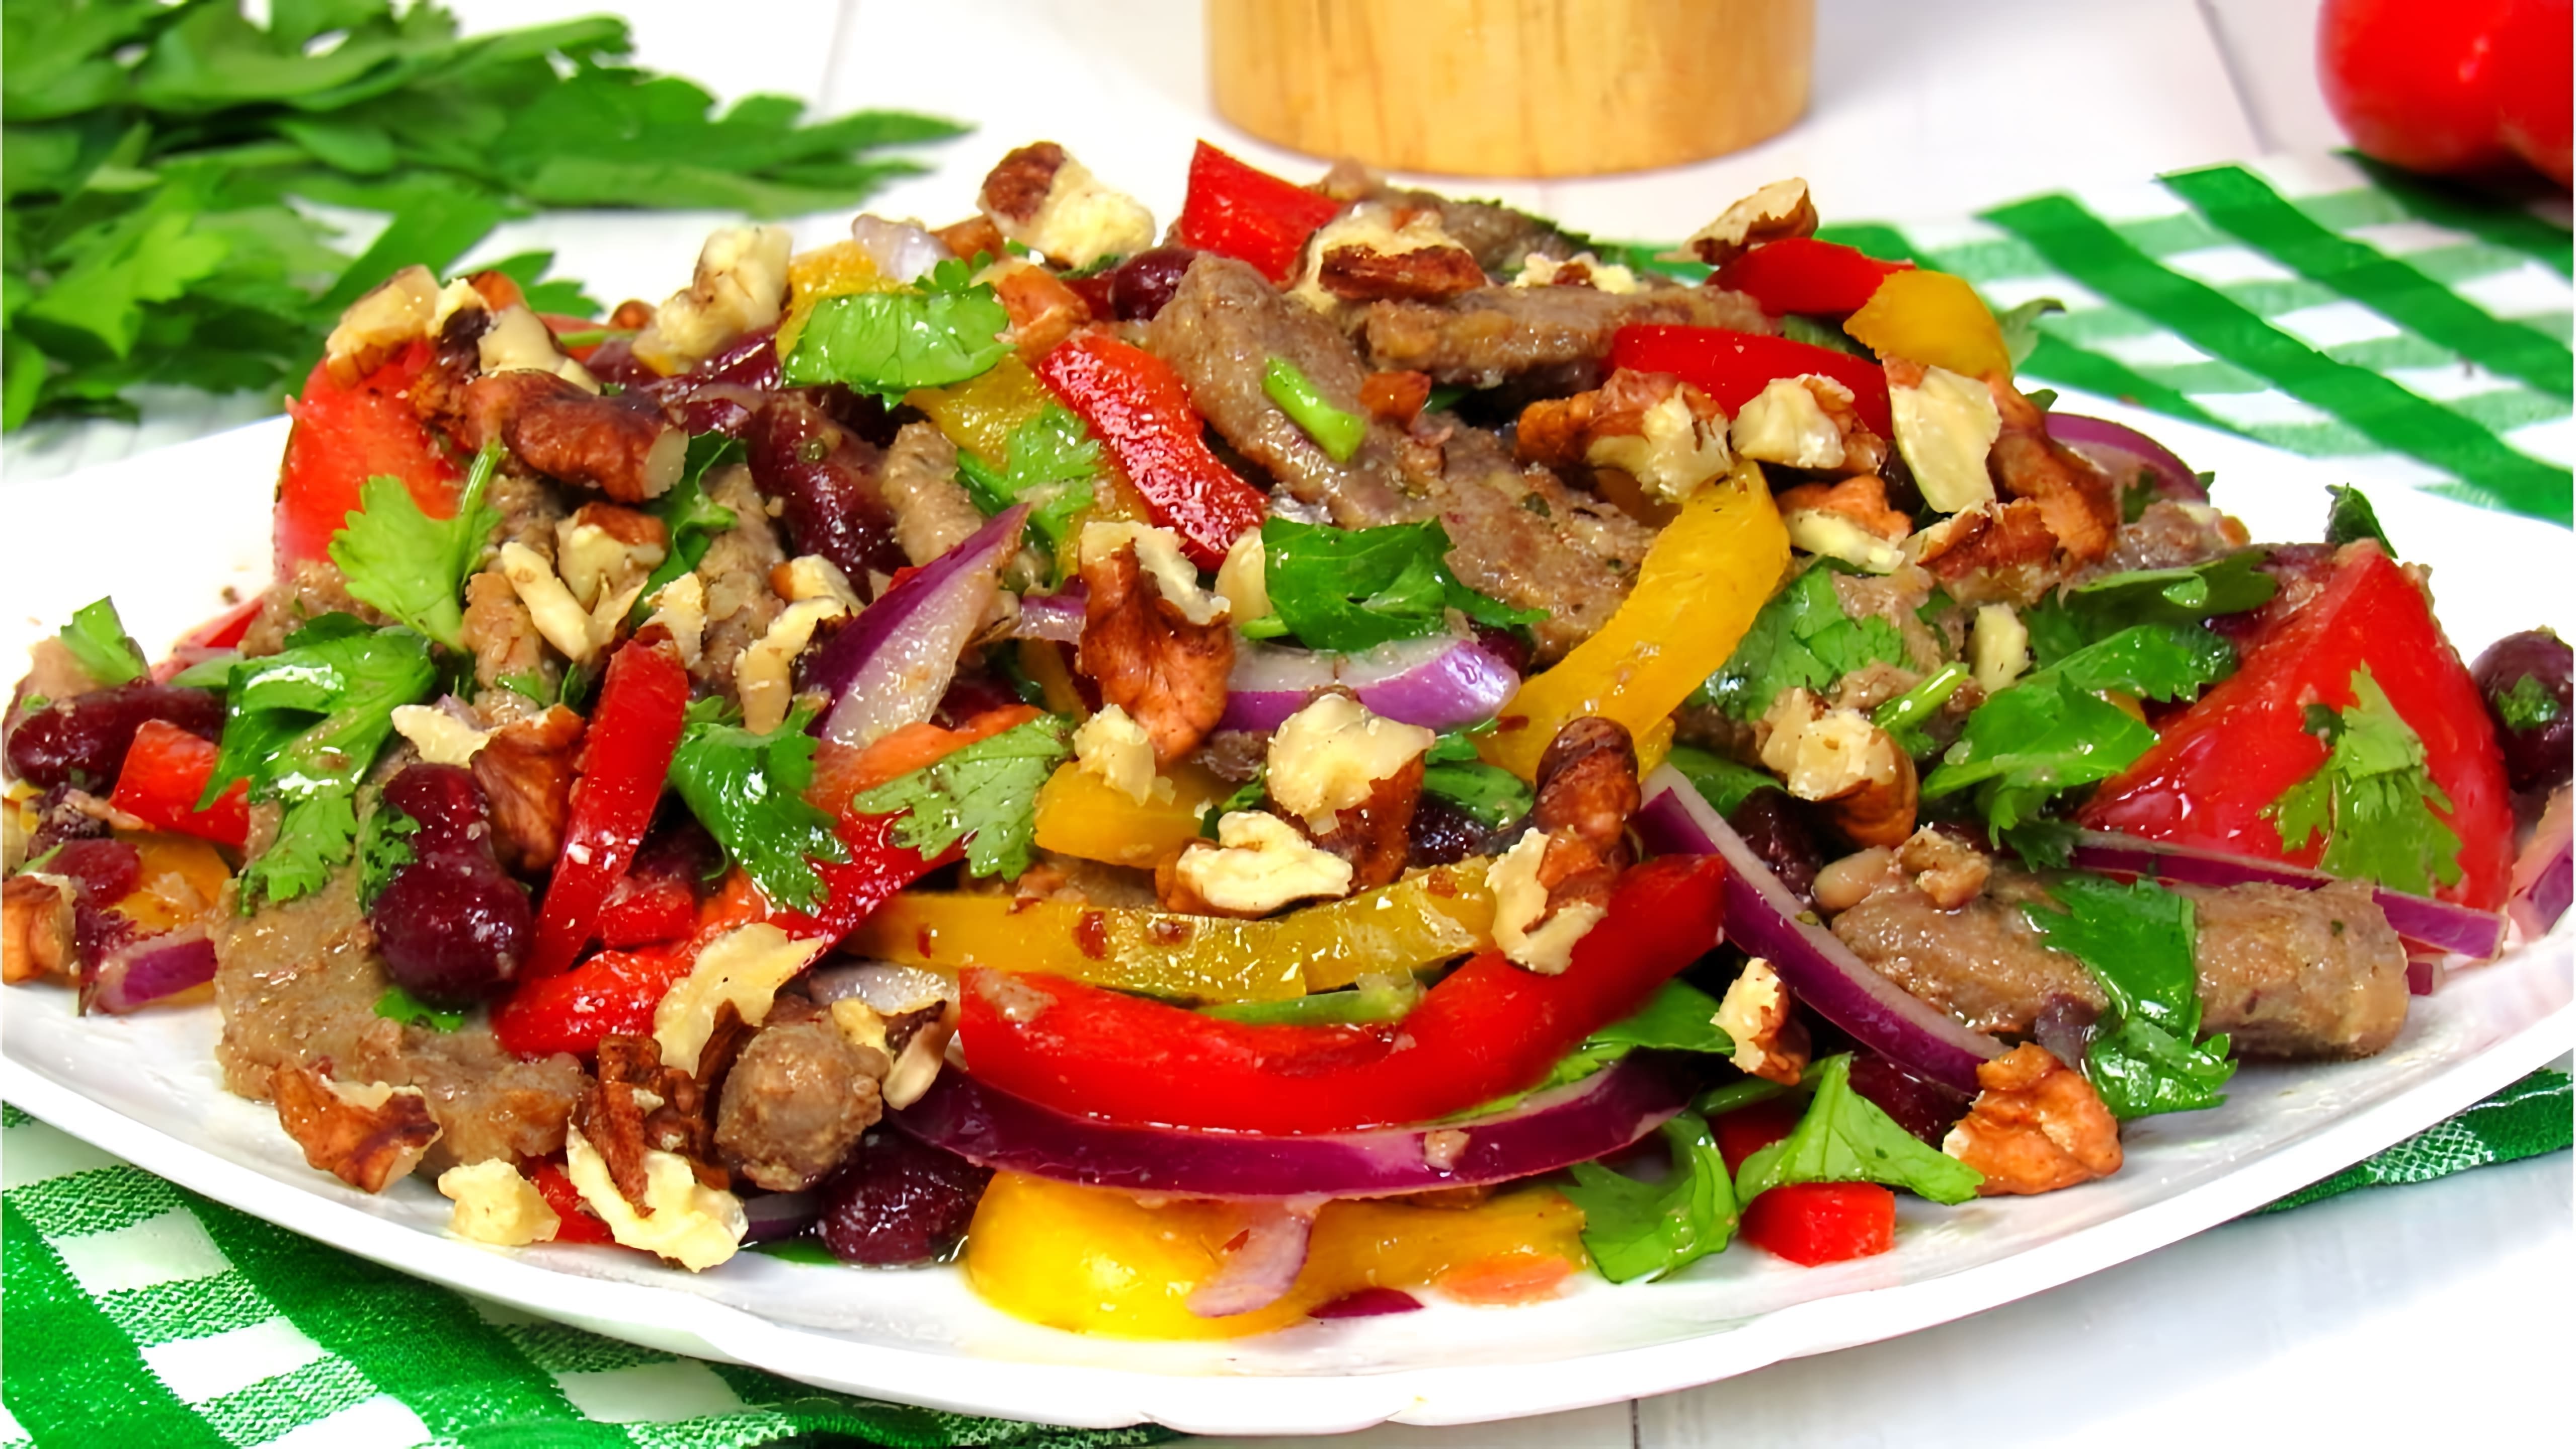 В этом видео демонстрируется рецепт приготовления салата "Тбилиси" с говядиной